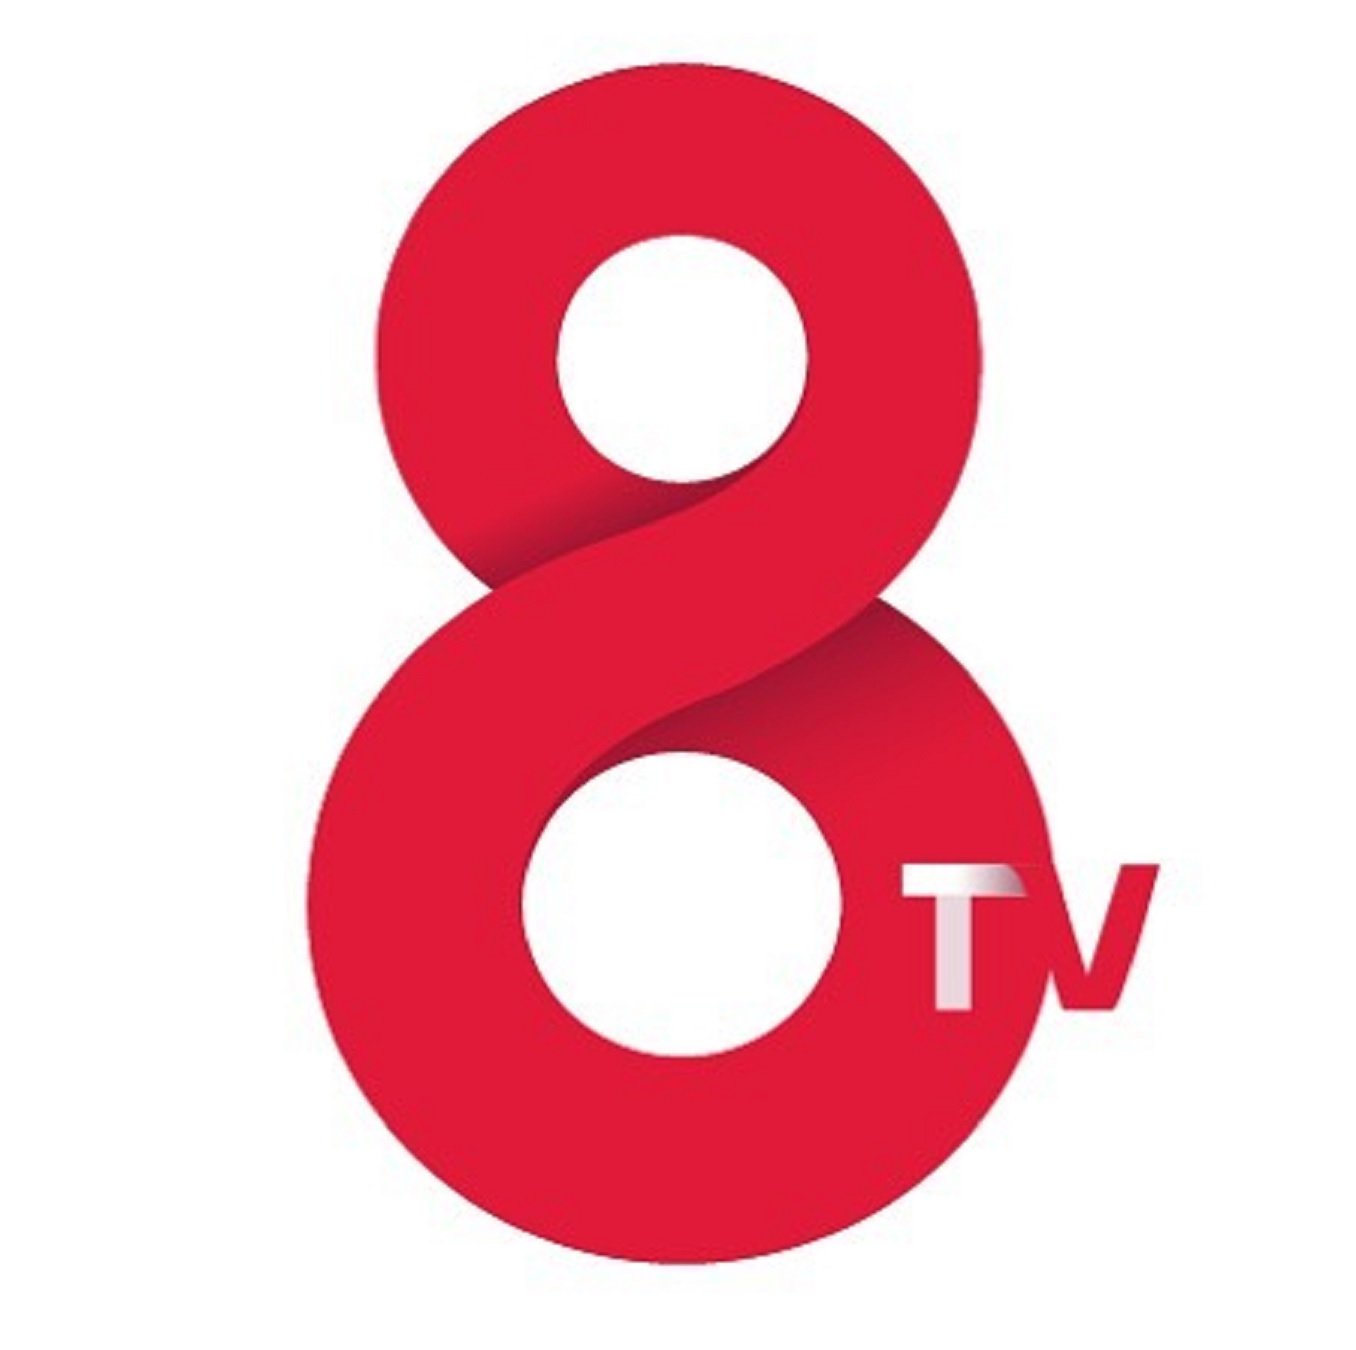 EXCLUSIVA Los presentadores VIPS catalanes de la nueva 8tv que empieza a andar